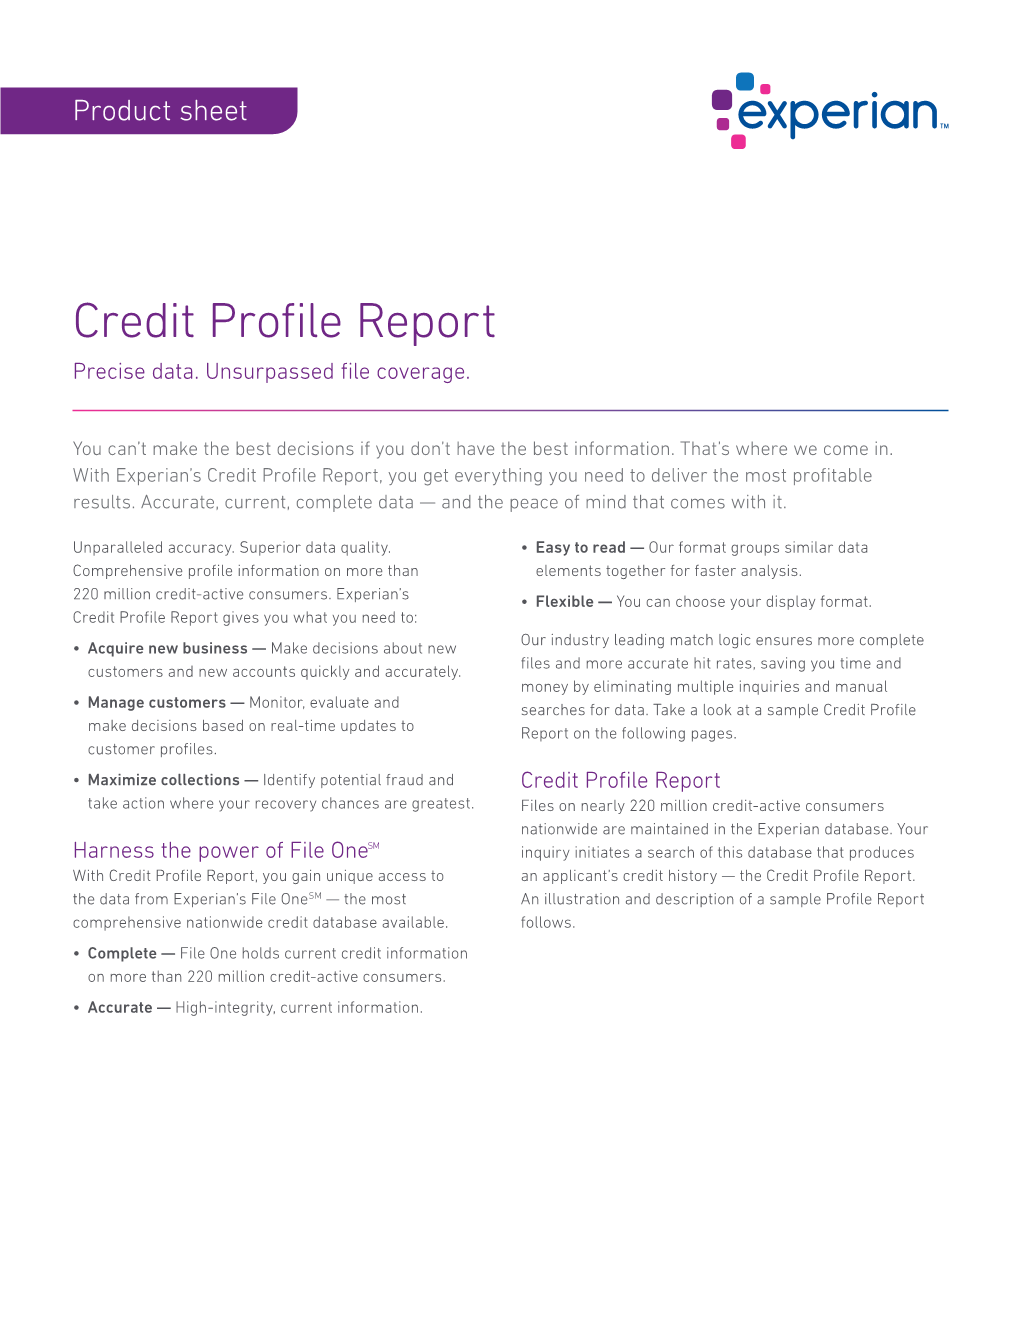 Credit Profile Report Precise Data